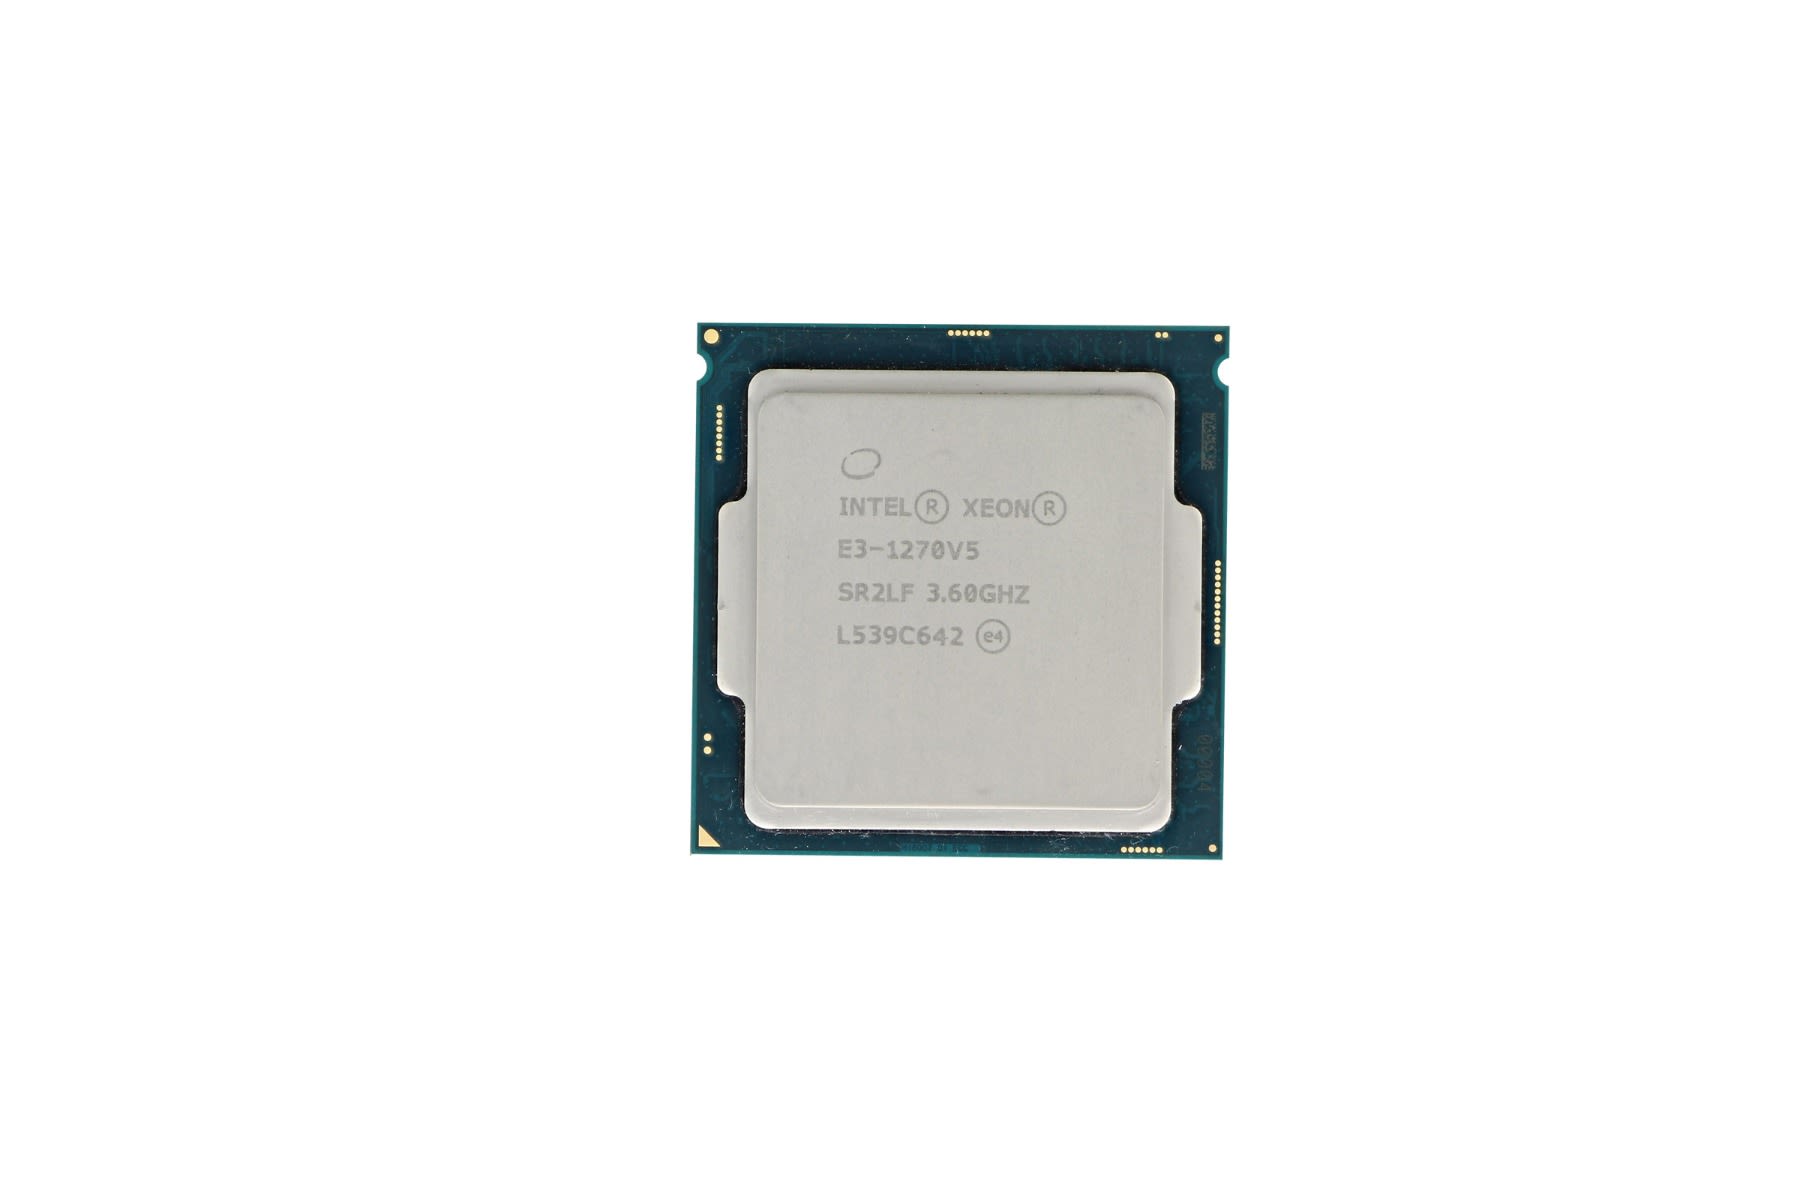 ほぼ新品 intel Xeon E3-1270V5 3.60Ghz 4コア8スレッド CPU LGA1151